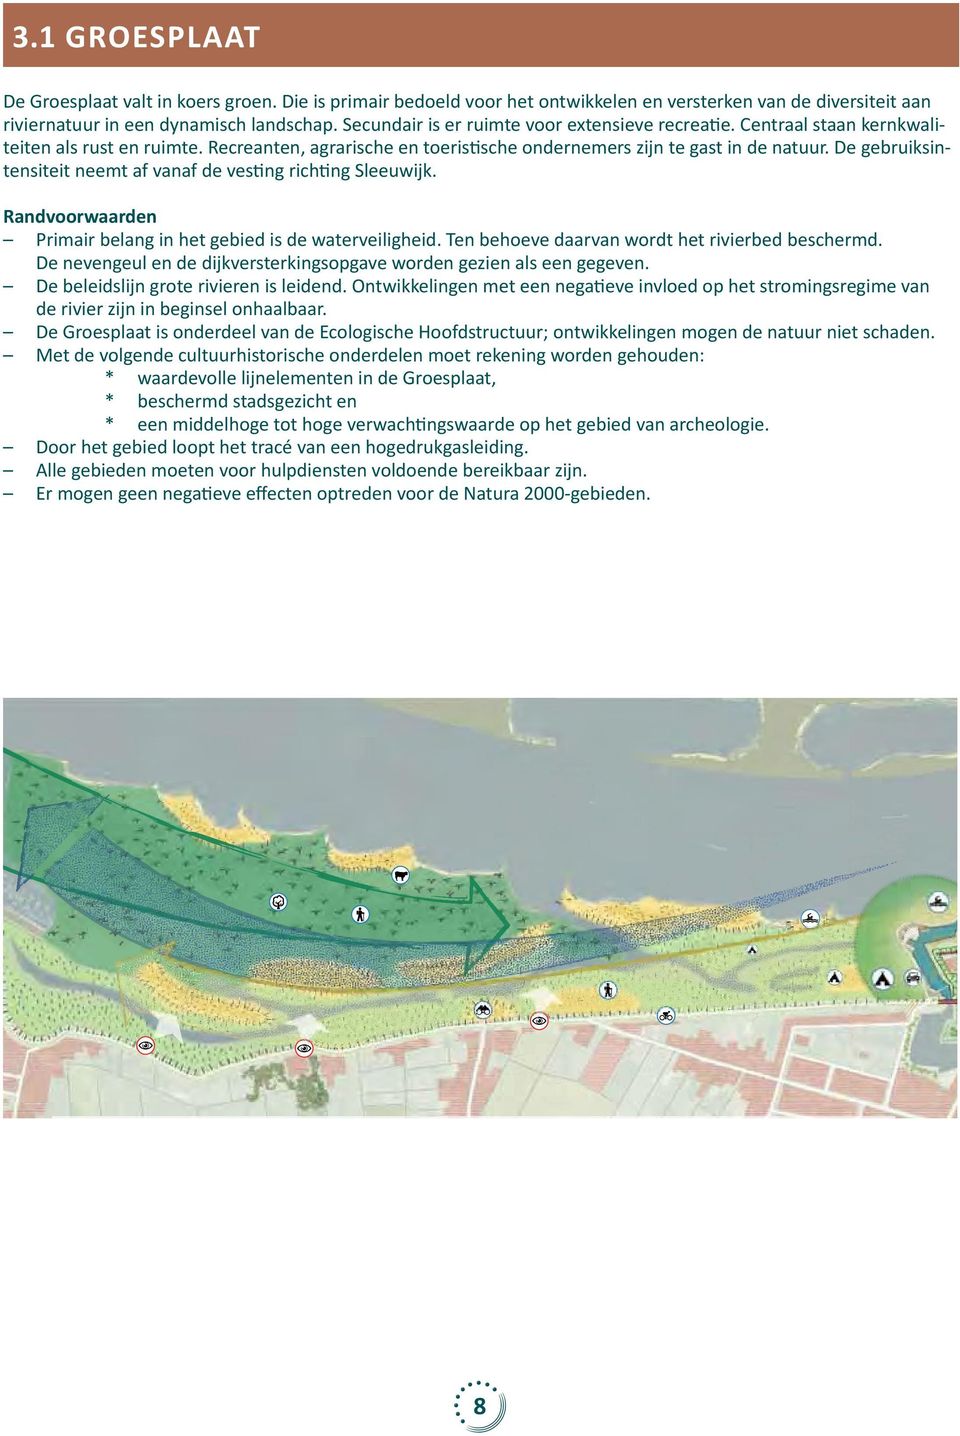 De gebruiksintensiteit neemt af vanaf de vesting richting Sleeuwijk. Randvoorwaarden Primair belang in het gebied is de waterveiligheid. Ten behoeve daarvan wordt het rivierbed beschermd.